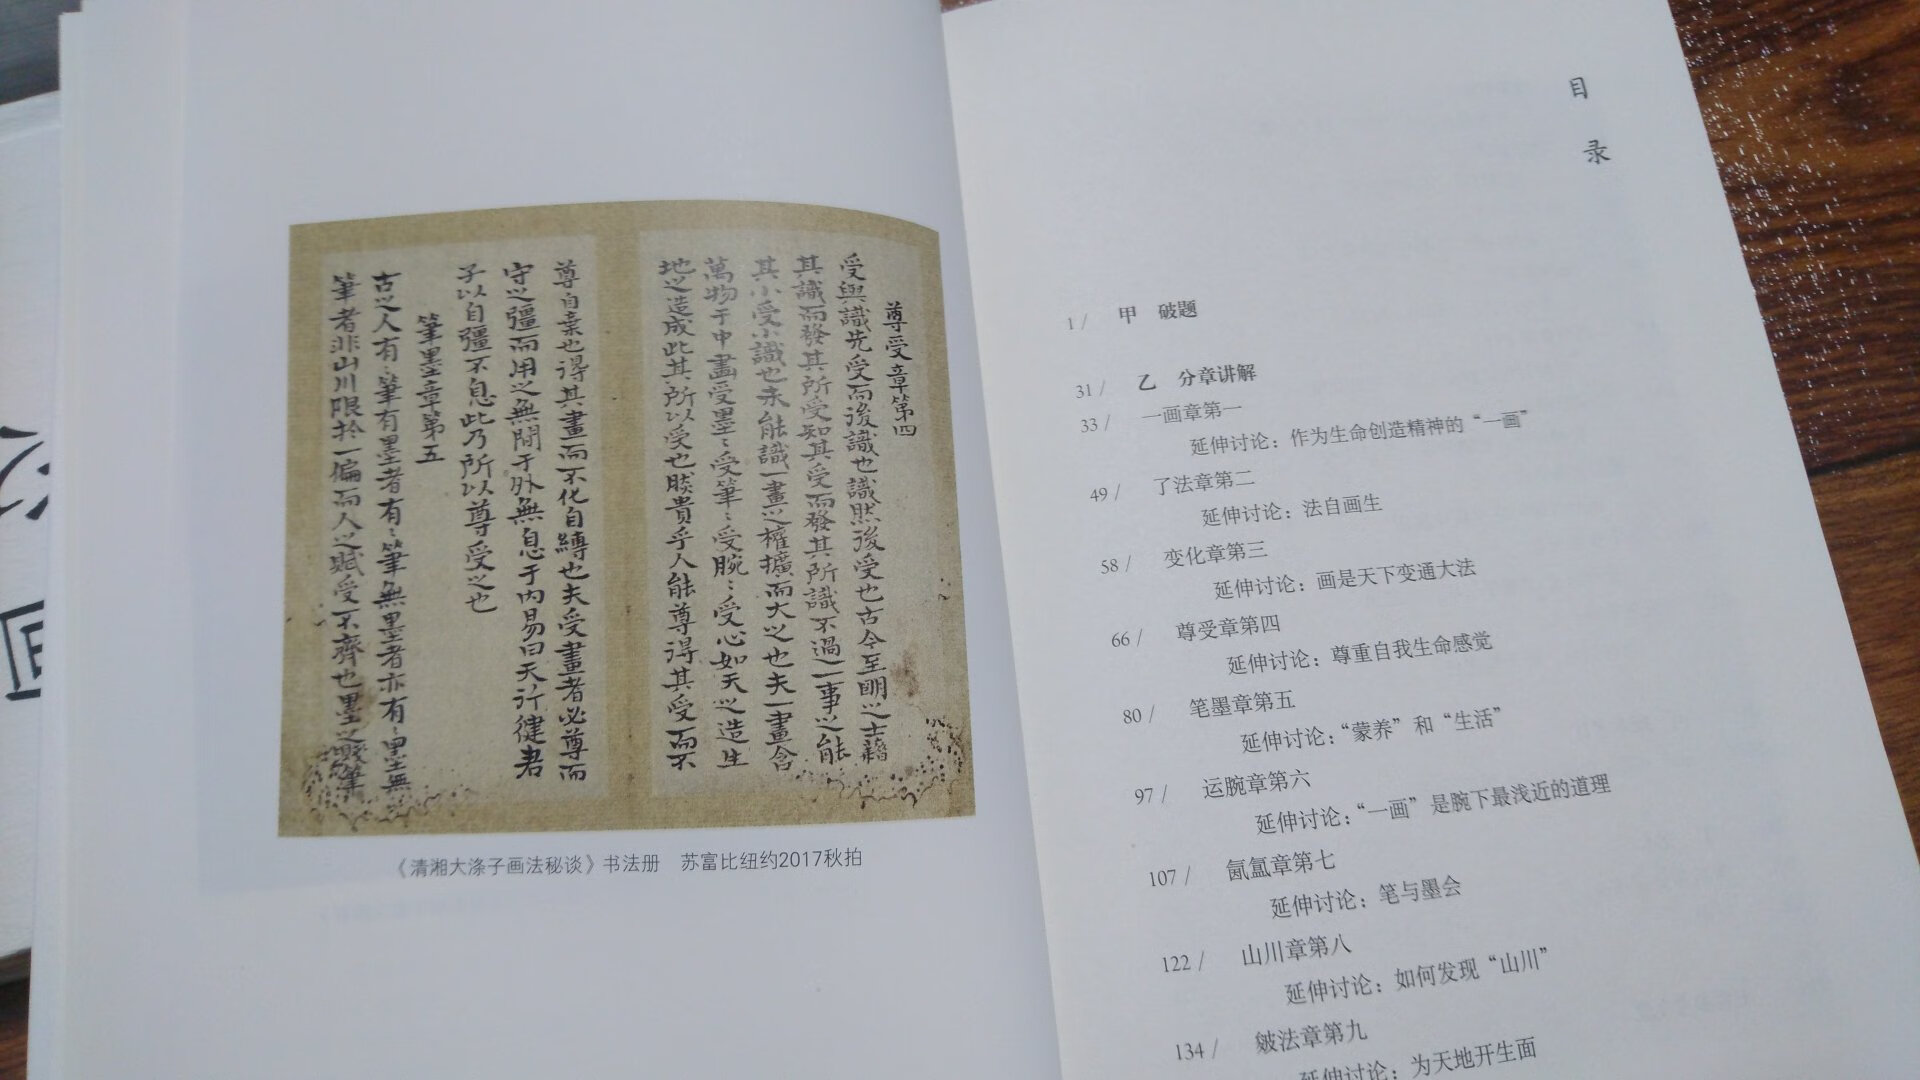 .精装本，印刷清晰，慢慢品读中国人文画。